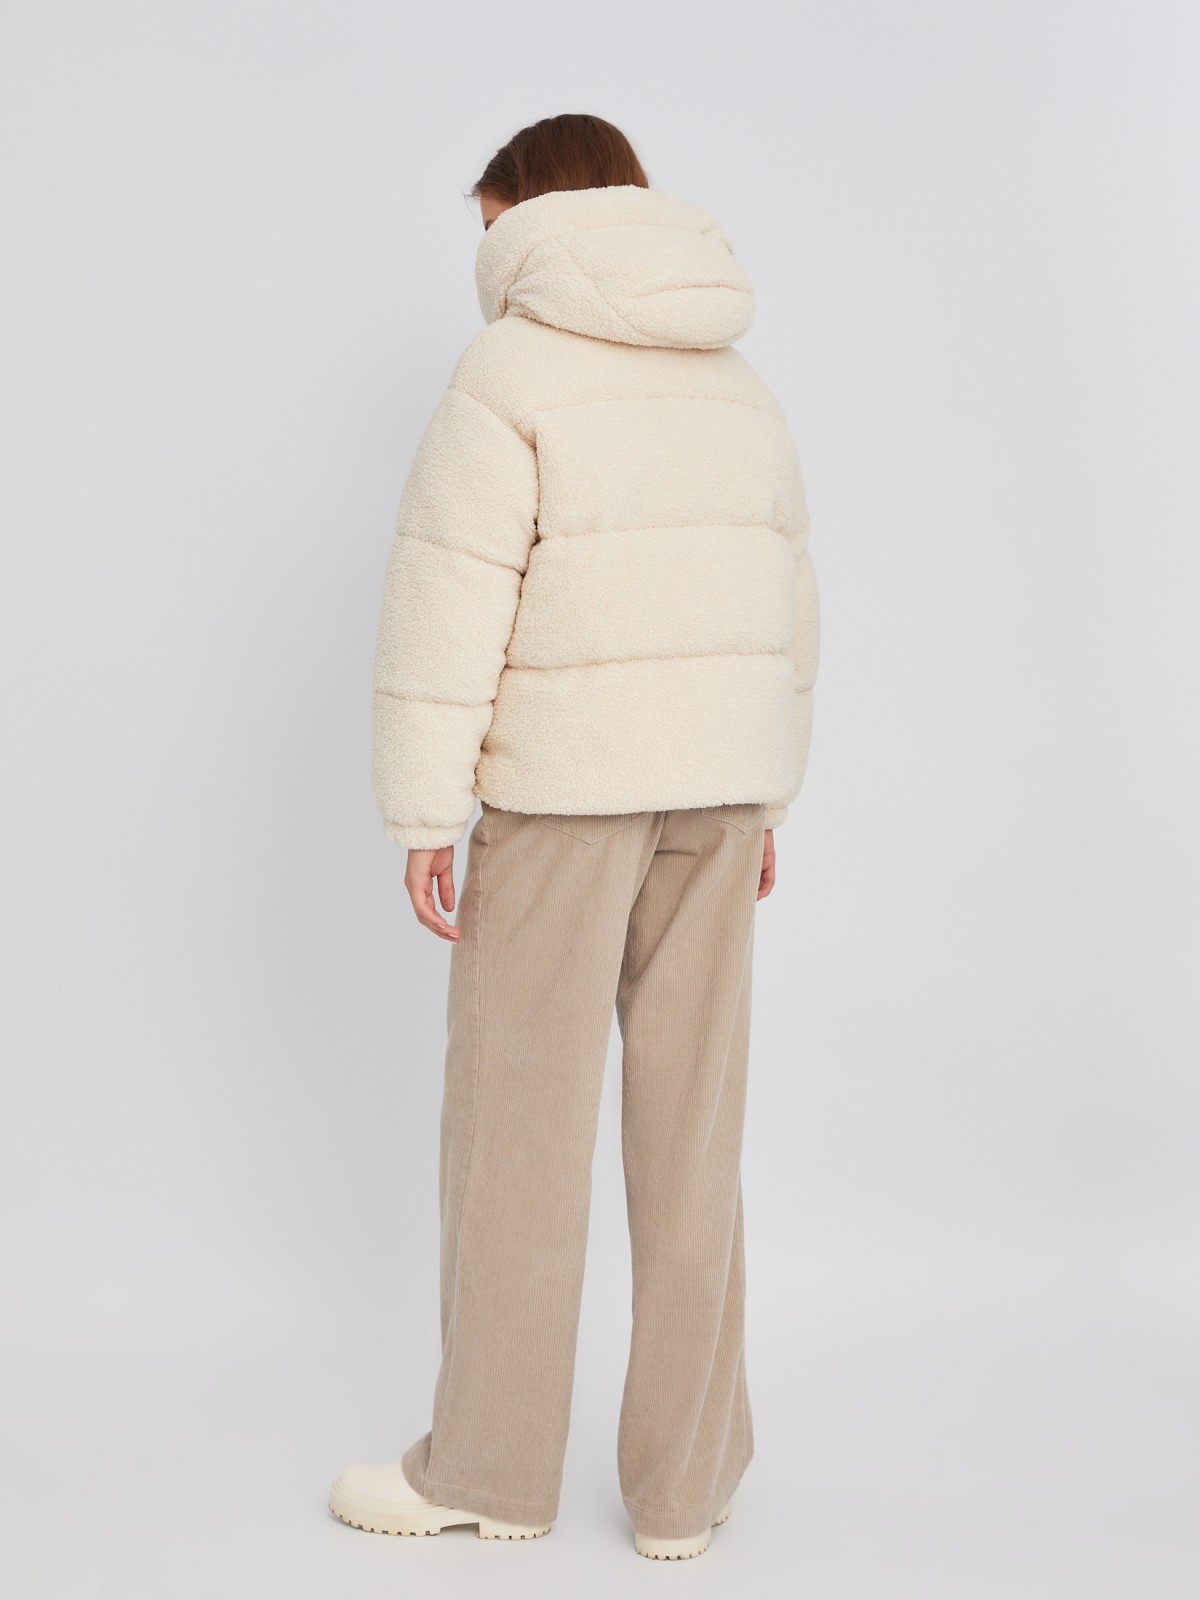 Короткая тёплая куртка-шуба из экомеха с капюшоном и двойным воротником zolla 023345550044, цвет молоко, размер XS - фото 6